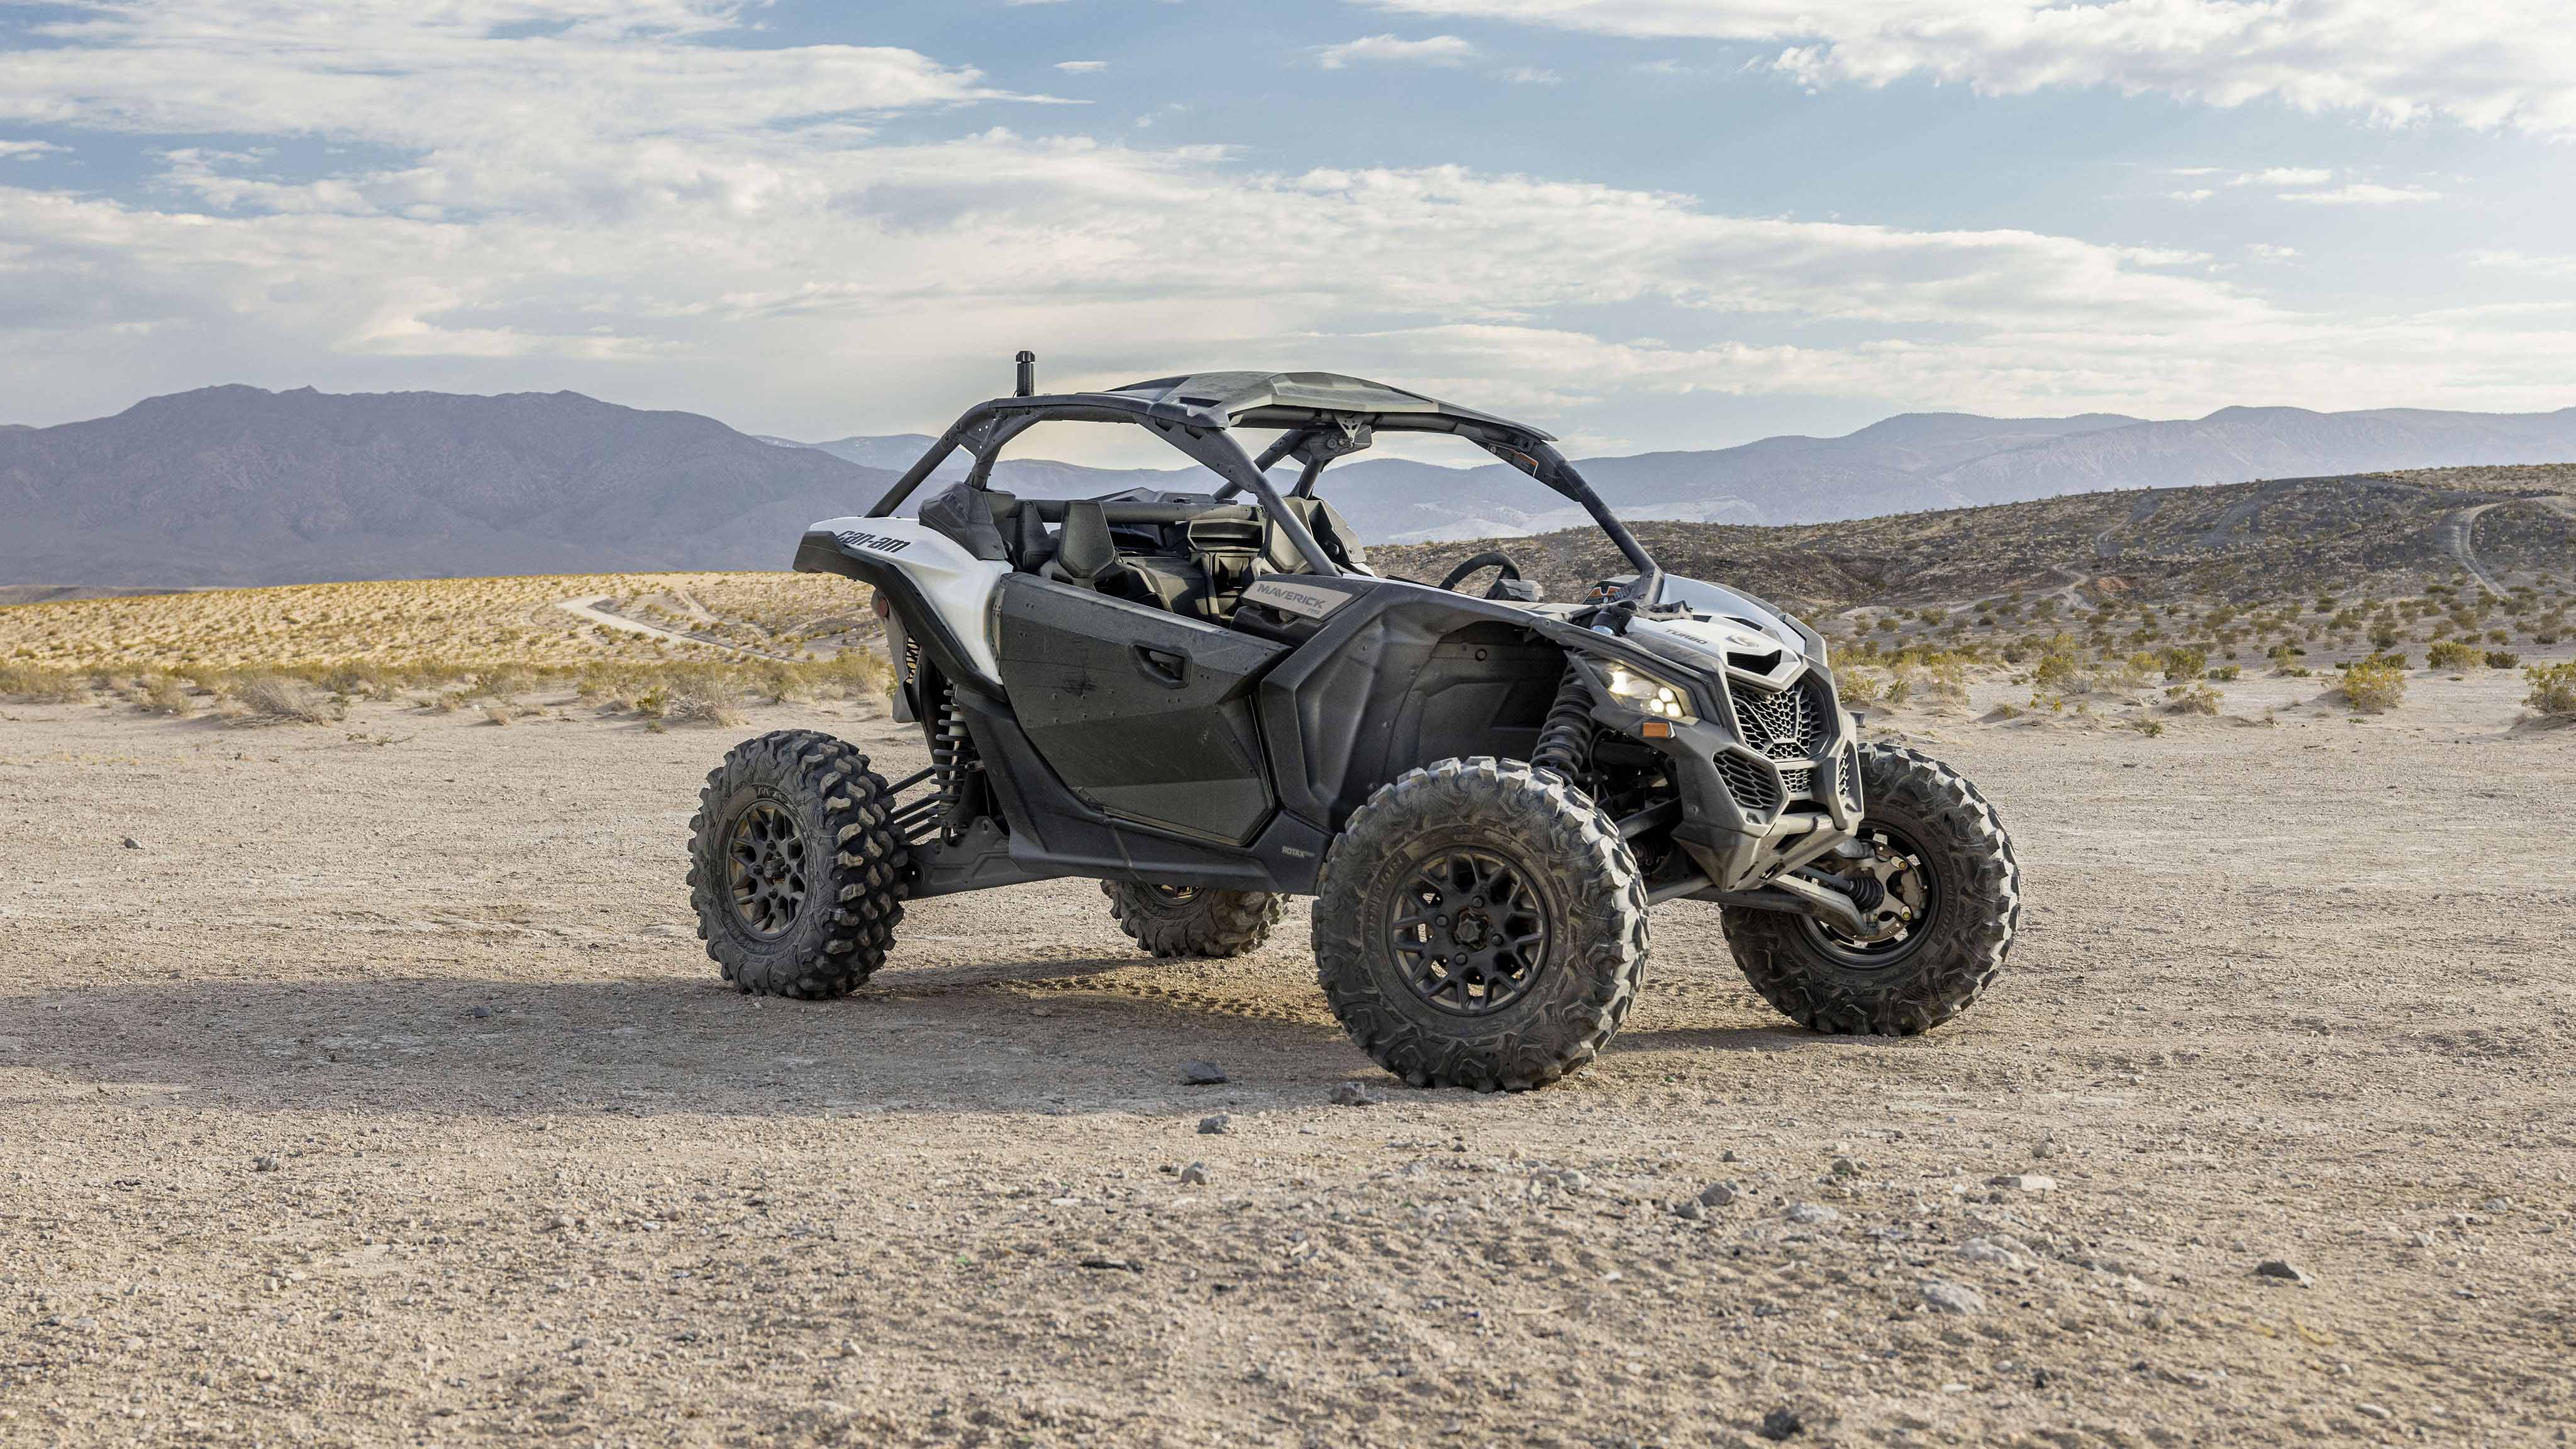 Sivunäkymä Can-Am Maverick X3 -ajoneuvosta aavikolla